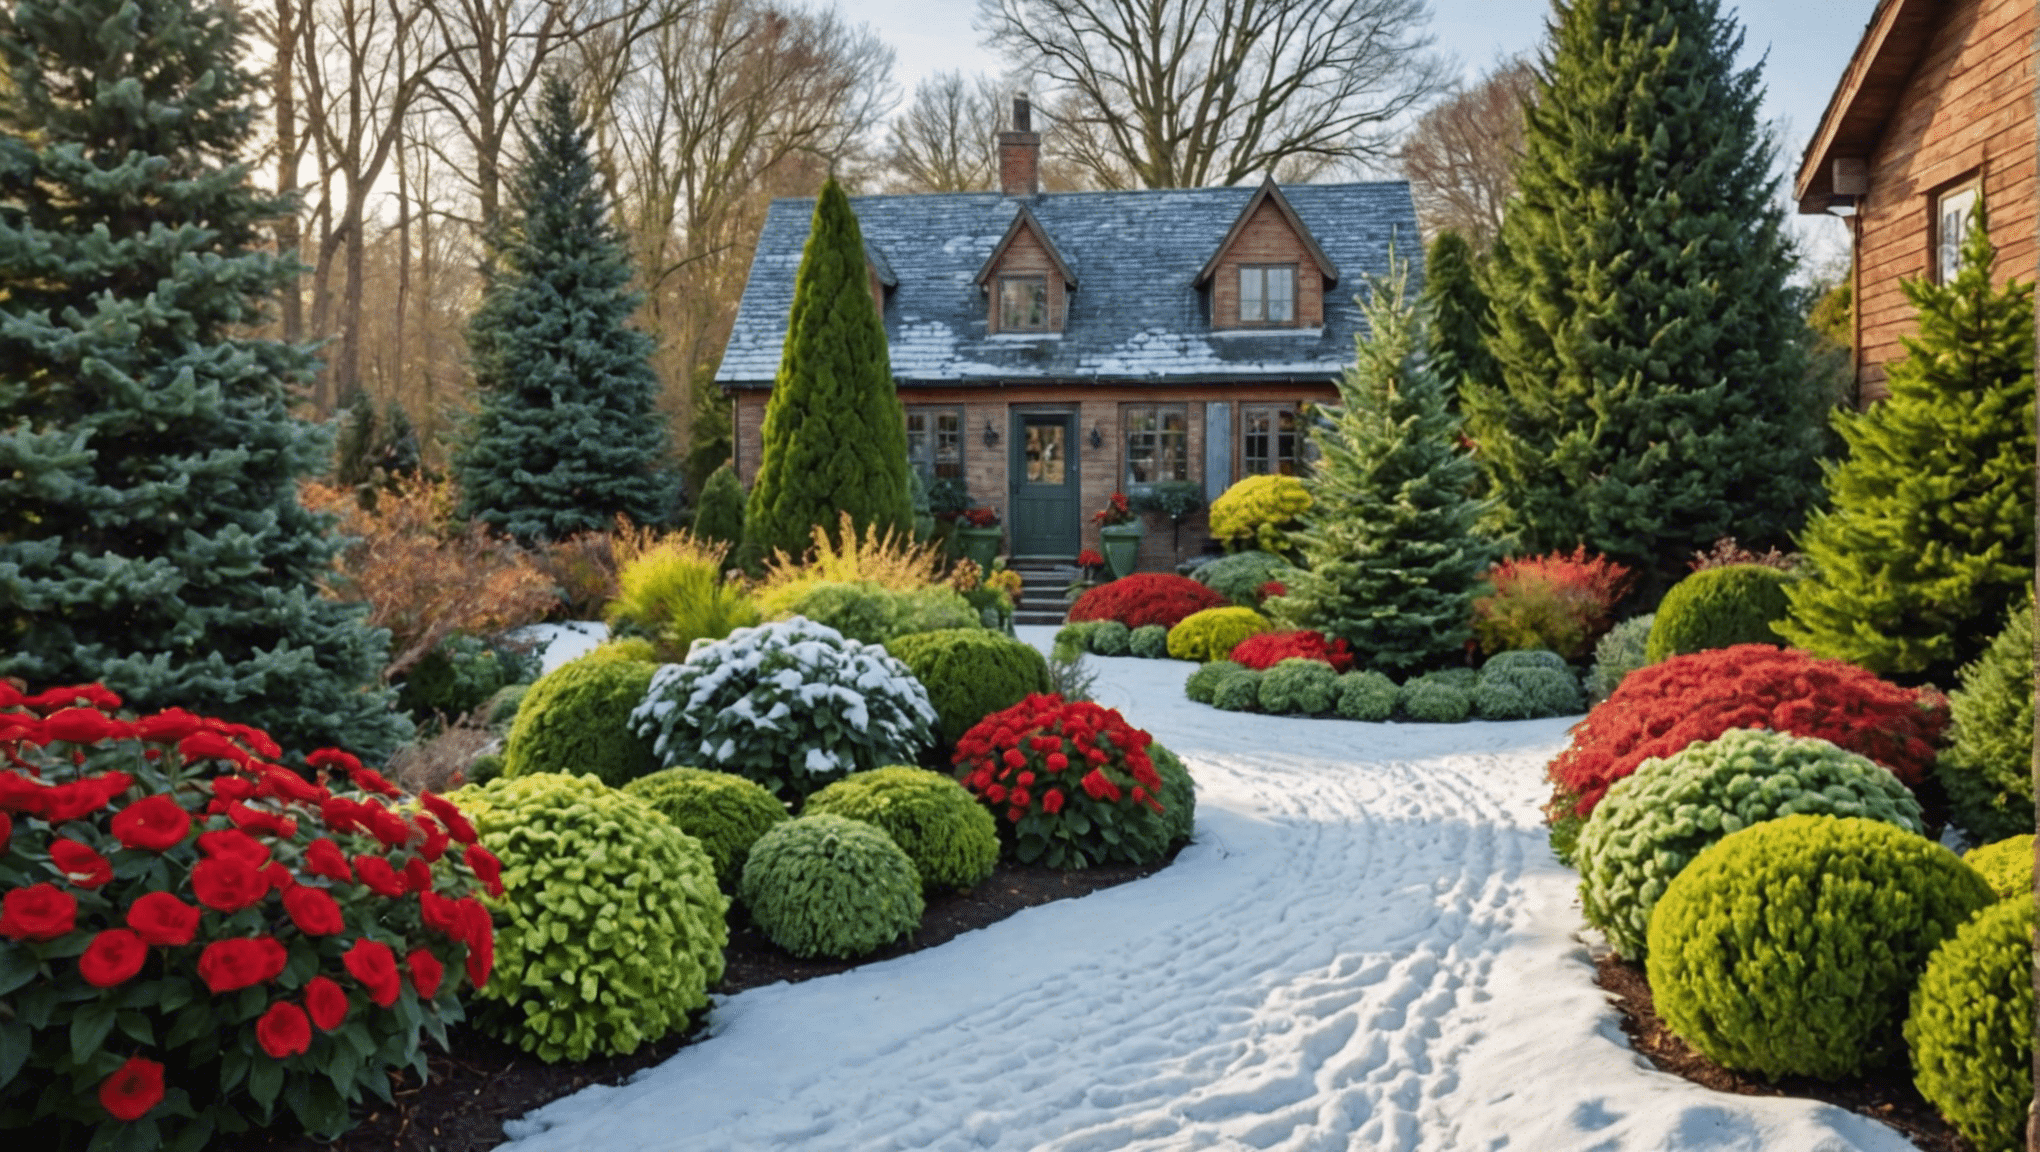 esplora le ultime idee di giardinaggio invernale per sfruttare al massimo la stagione. scopri suggerimenti, ispirazioni e consigli di esperti per il tuo giardino d'inverno.